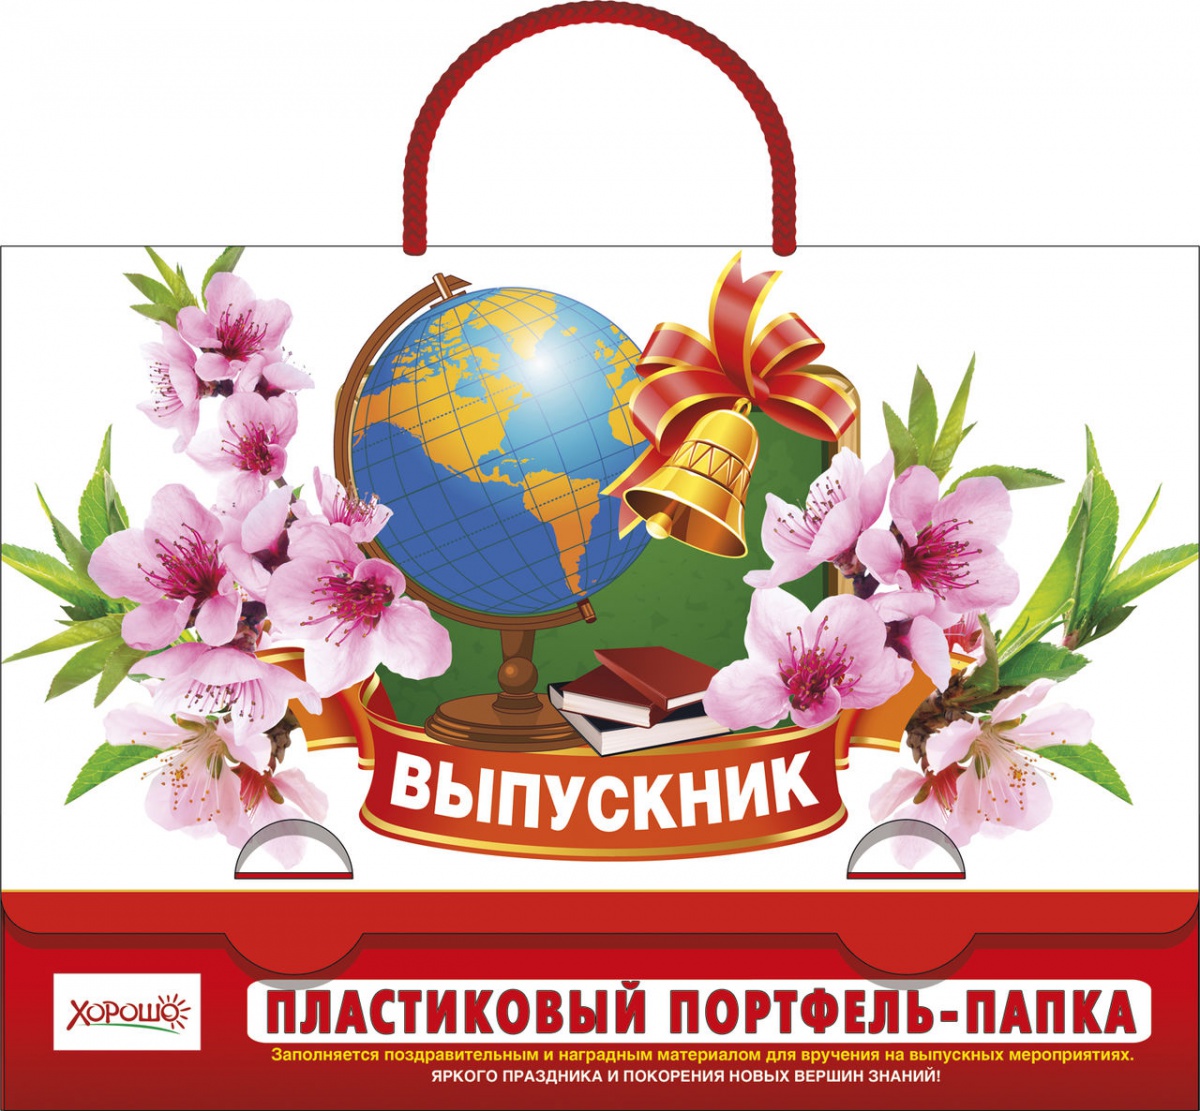 Пластиковый портфель-папка "Выпускник" Формат А4 (остаток 6 штук)